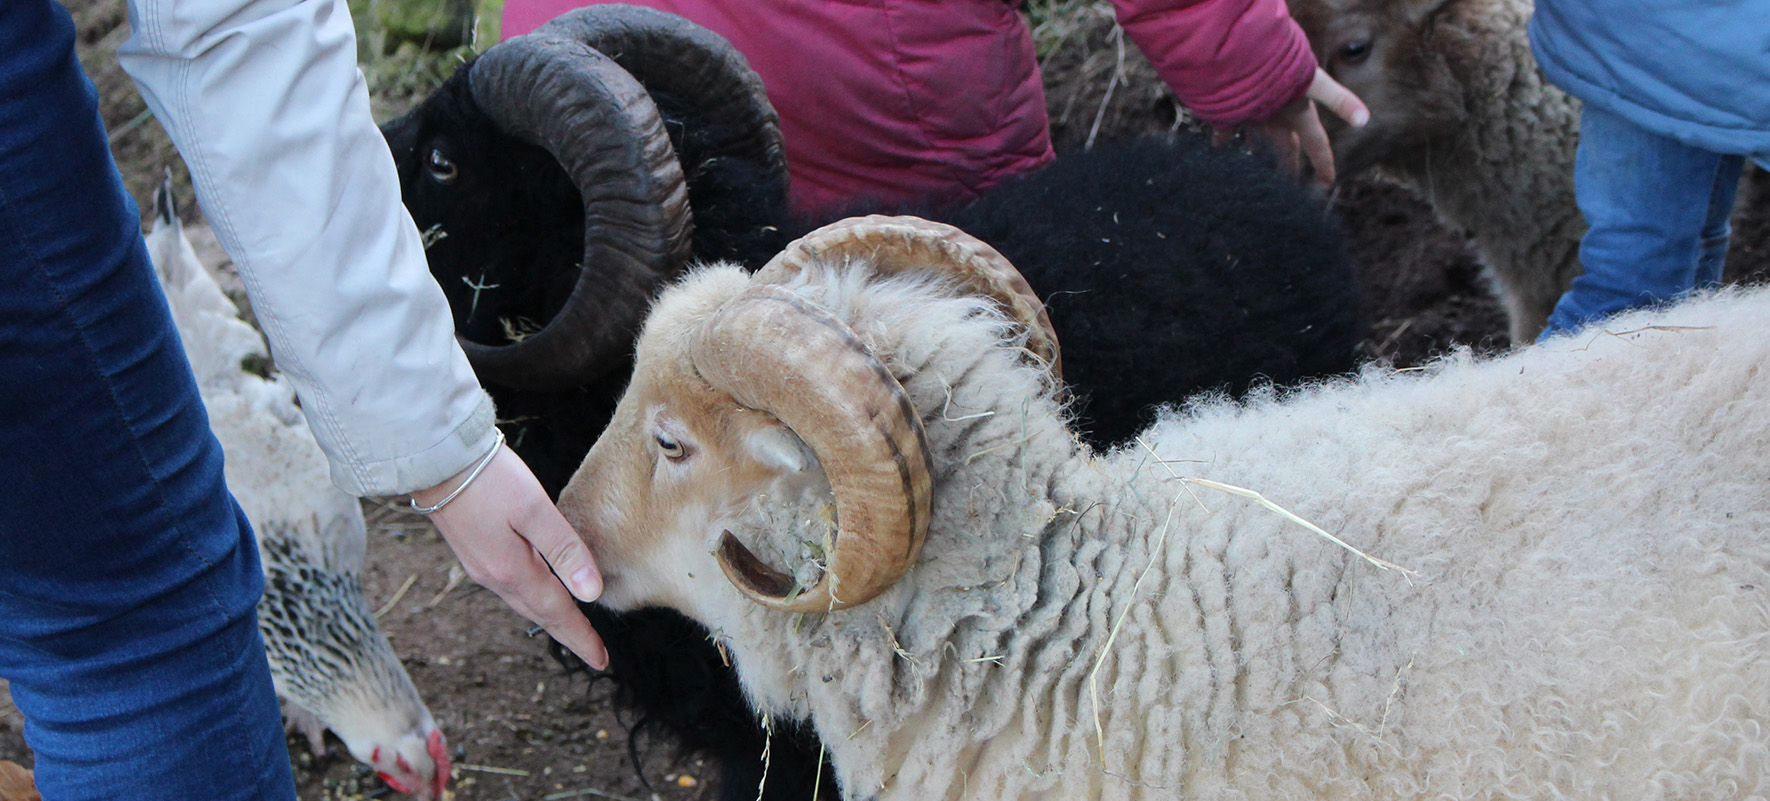 Les moutons d'Ouessant de la ferme nourrit lors d'une visite famille de la ferme